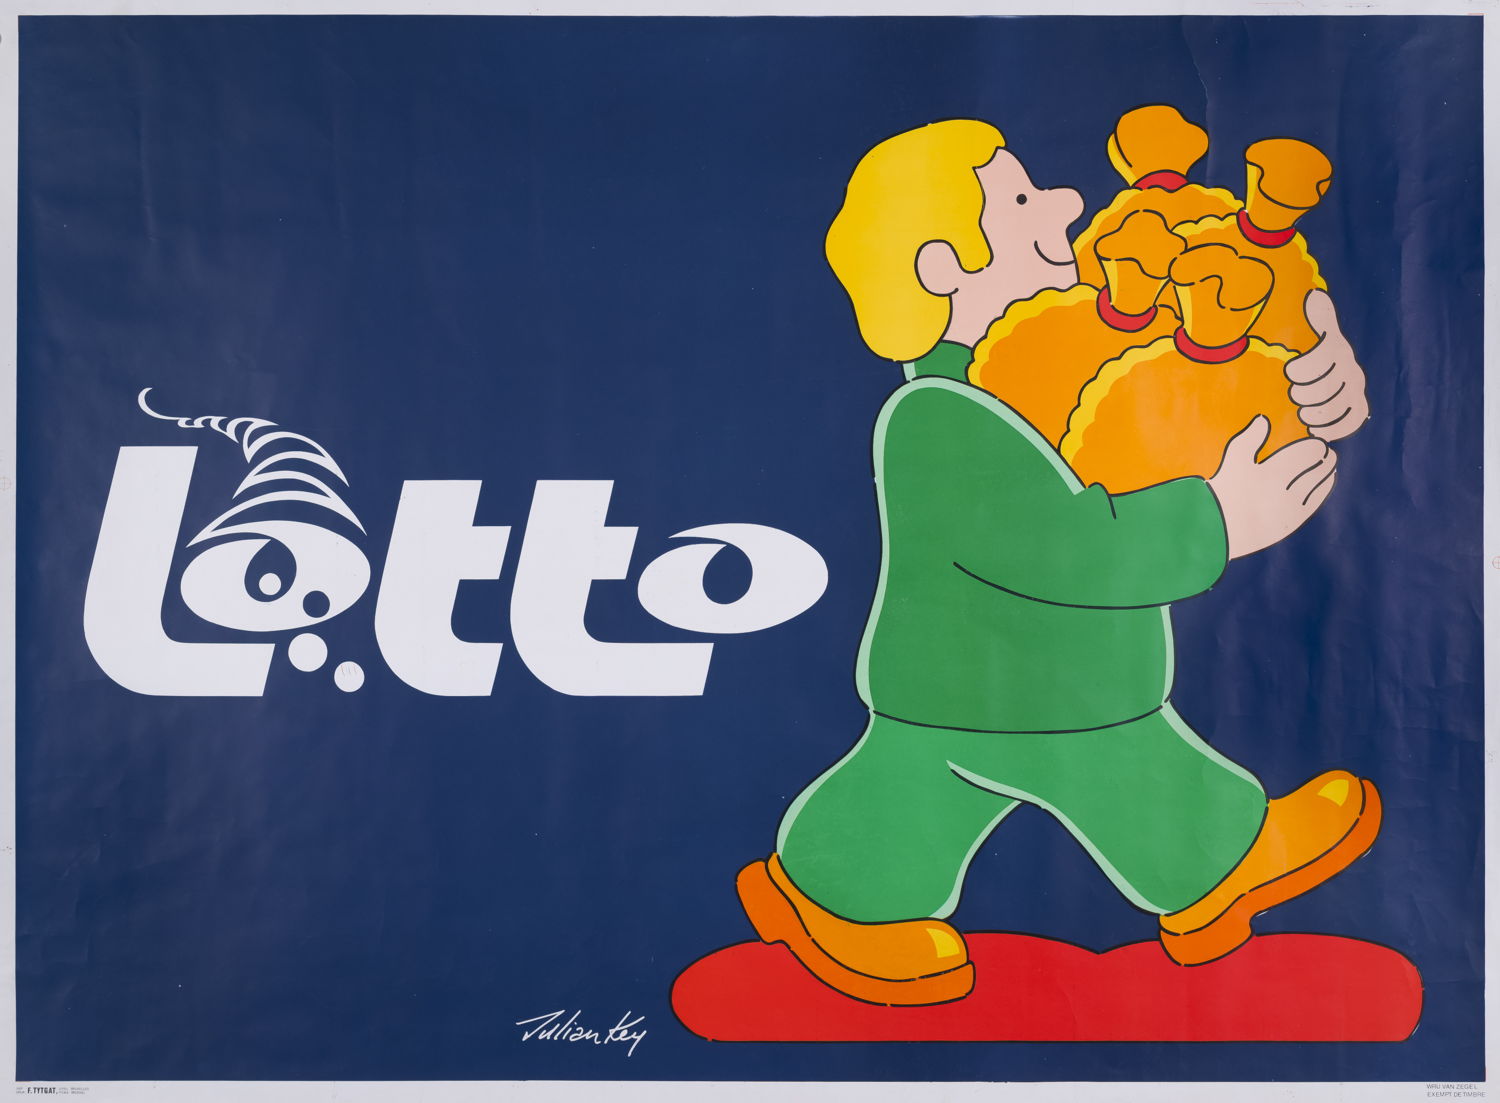 Affiche du premier tirage Lotto, le 4 février 1978 © Collection Loterie Nationale. Photo : L’Atelier de l’Imagier